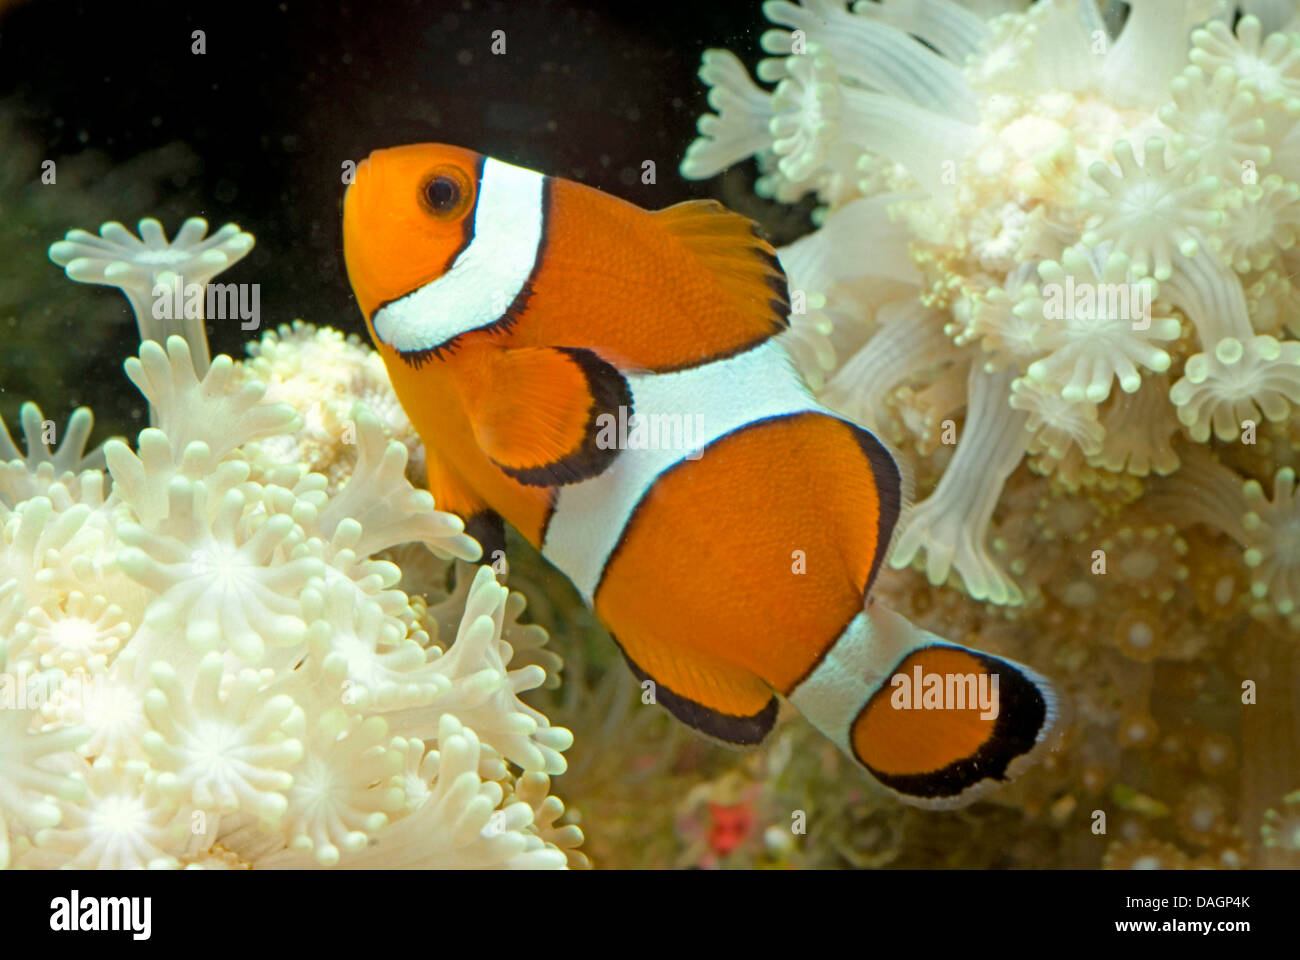 Poissons Clown, Clown Orange poisson clown (Amphiprion percula), entre les tentacules d'une anémone de mer Banque D'Images